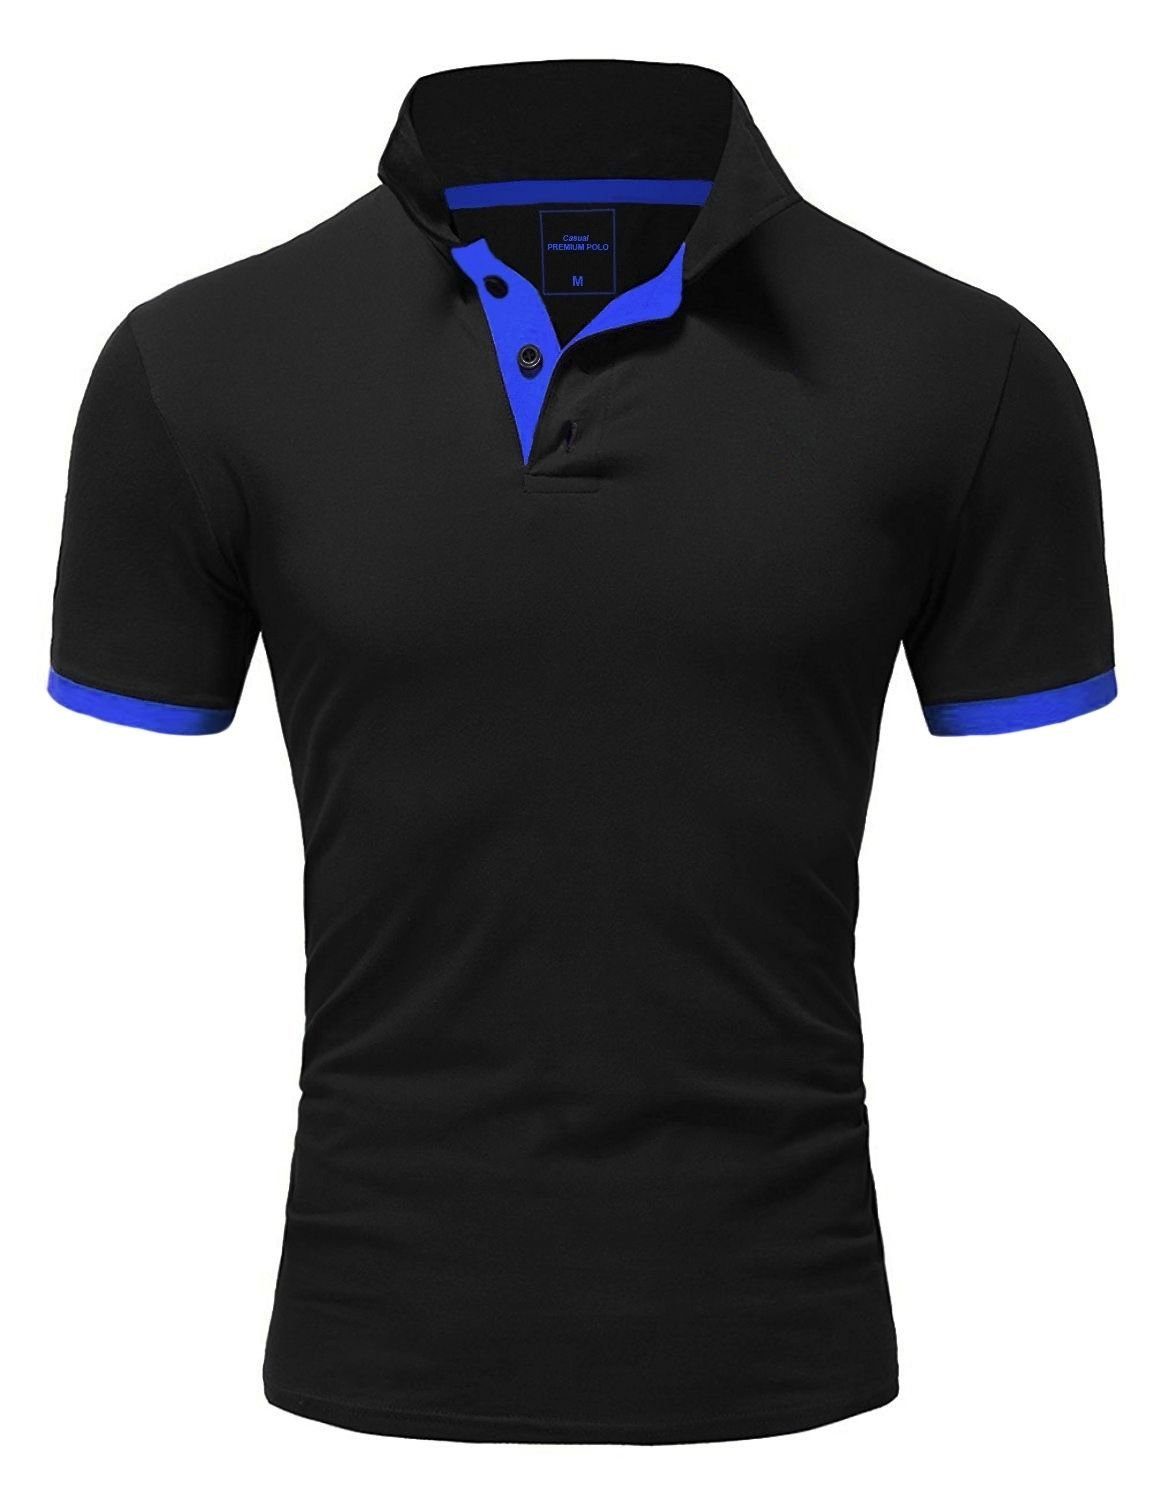 behype Poloshirt BASE mit kontrastfarbigen Details schwarz-blau